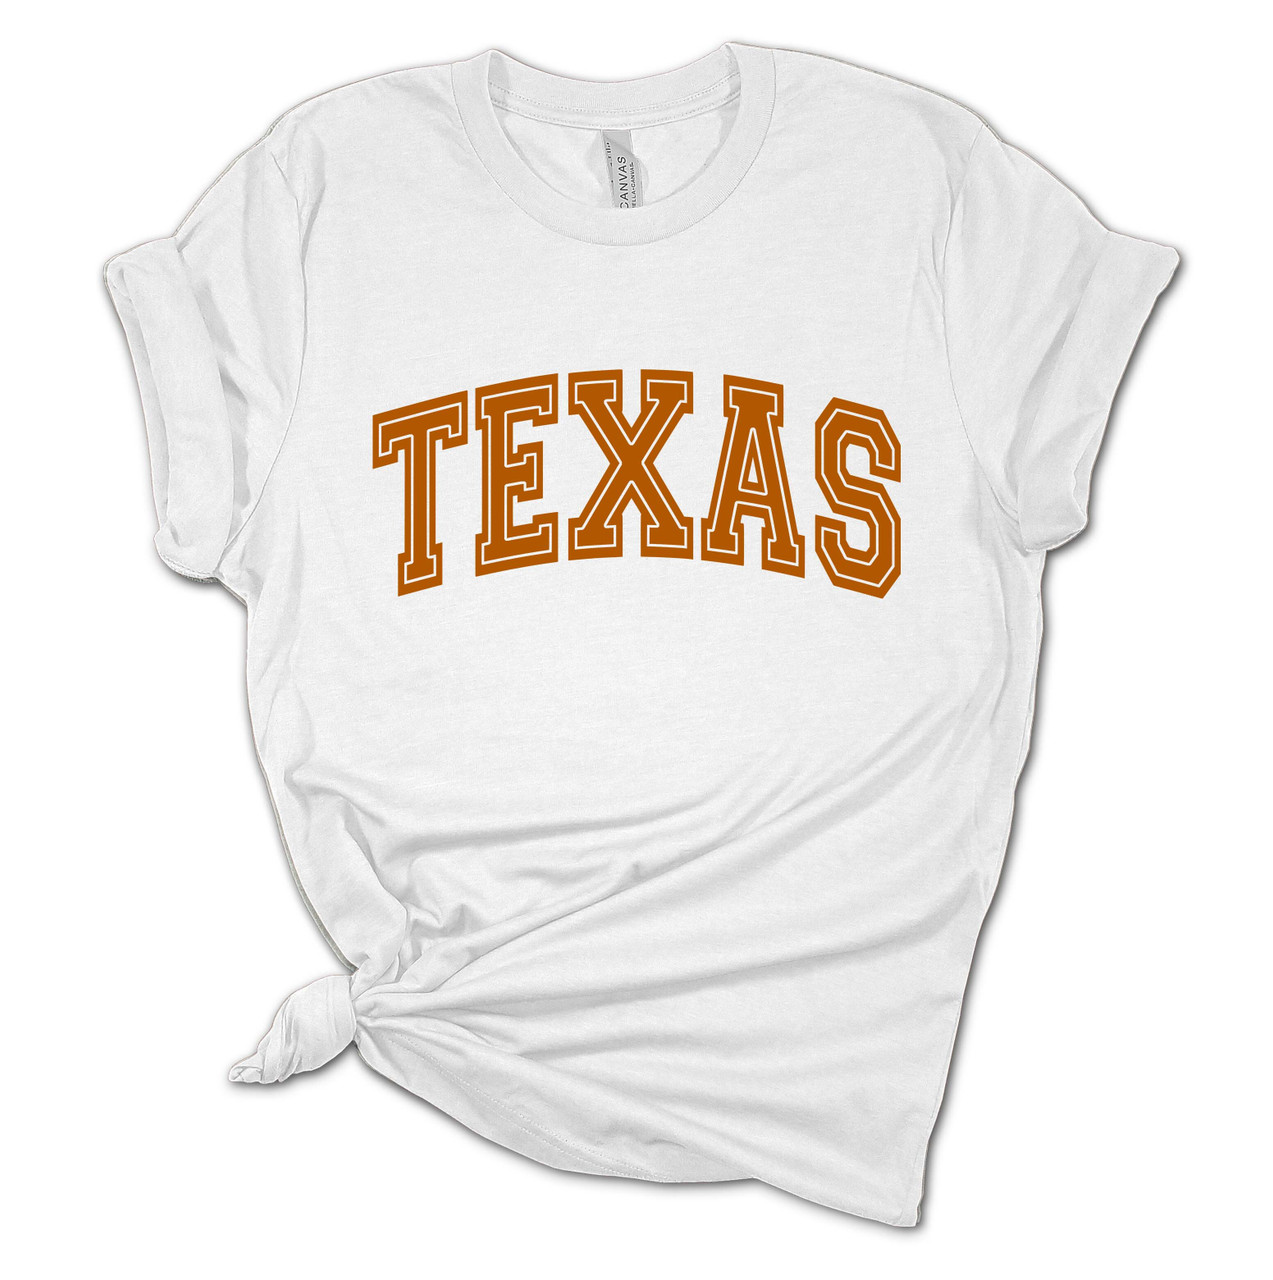 Hook Em Horn Texas Game Day T-shirt